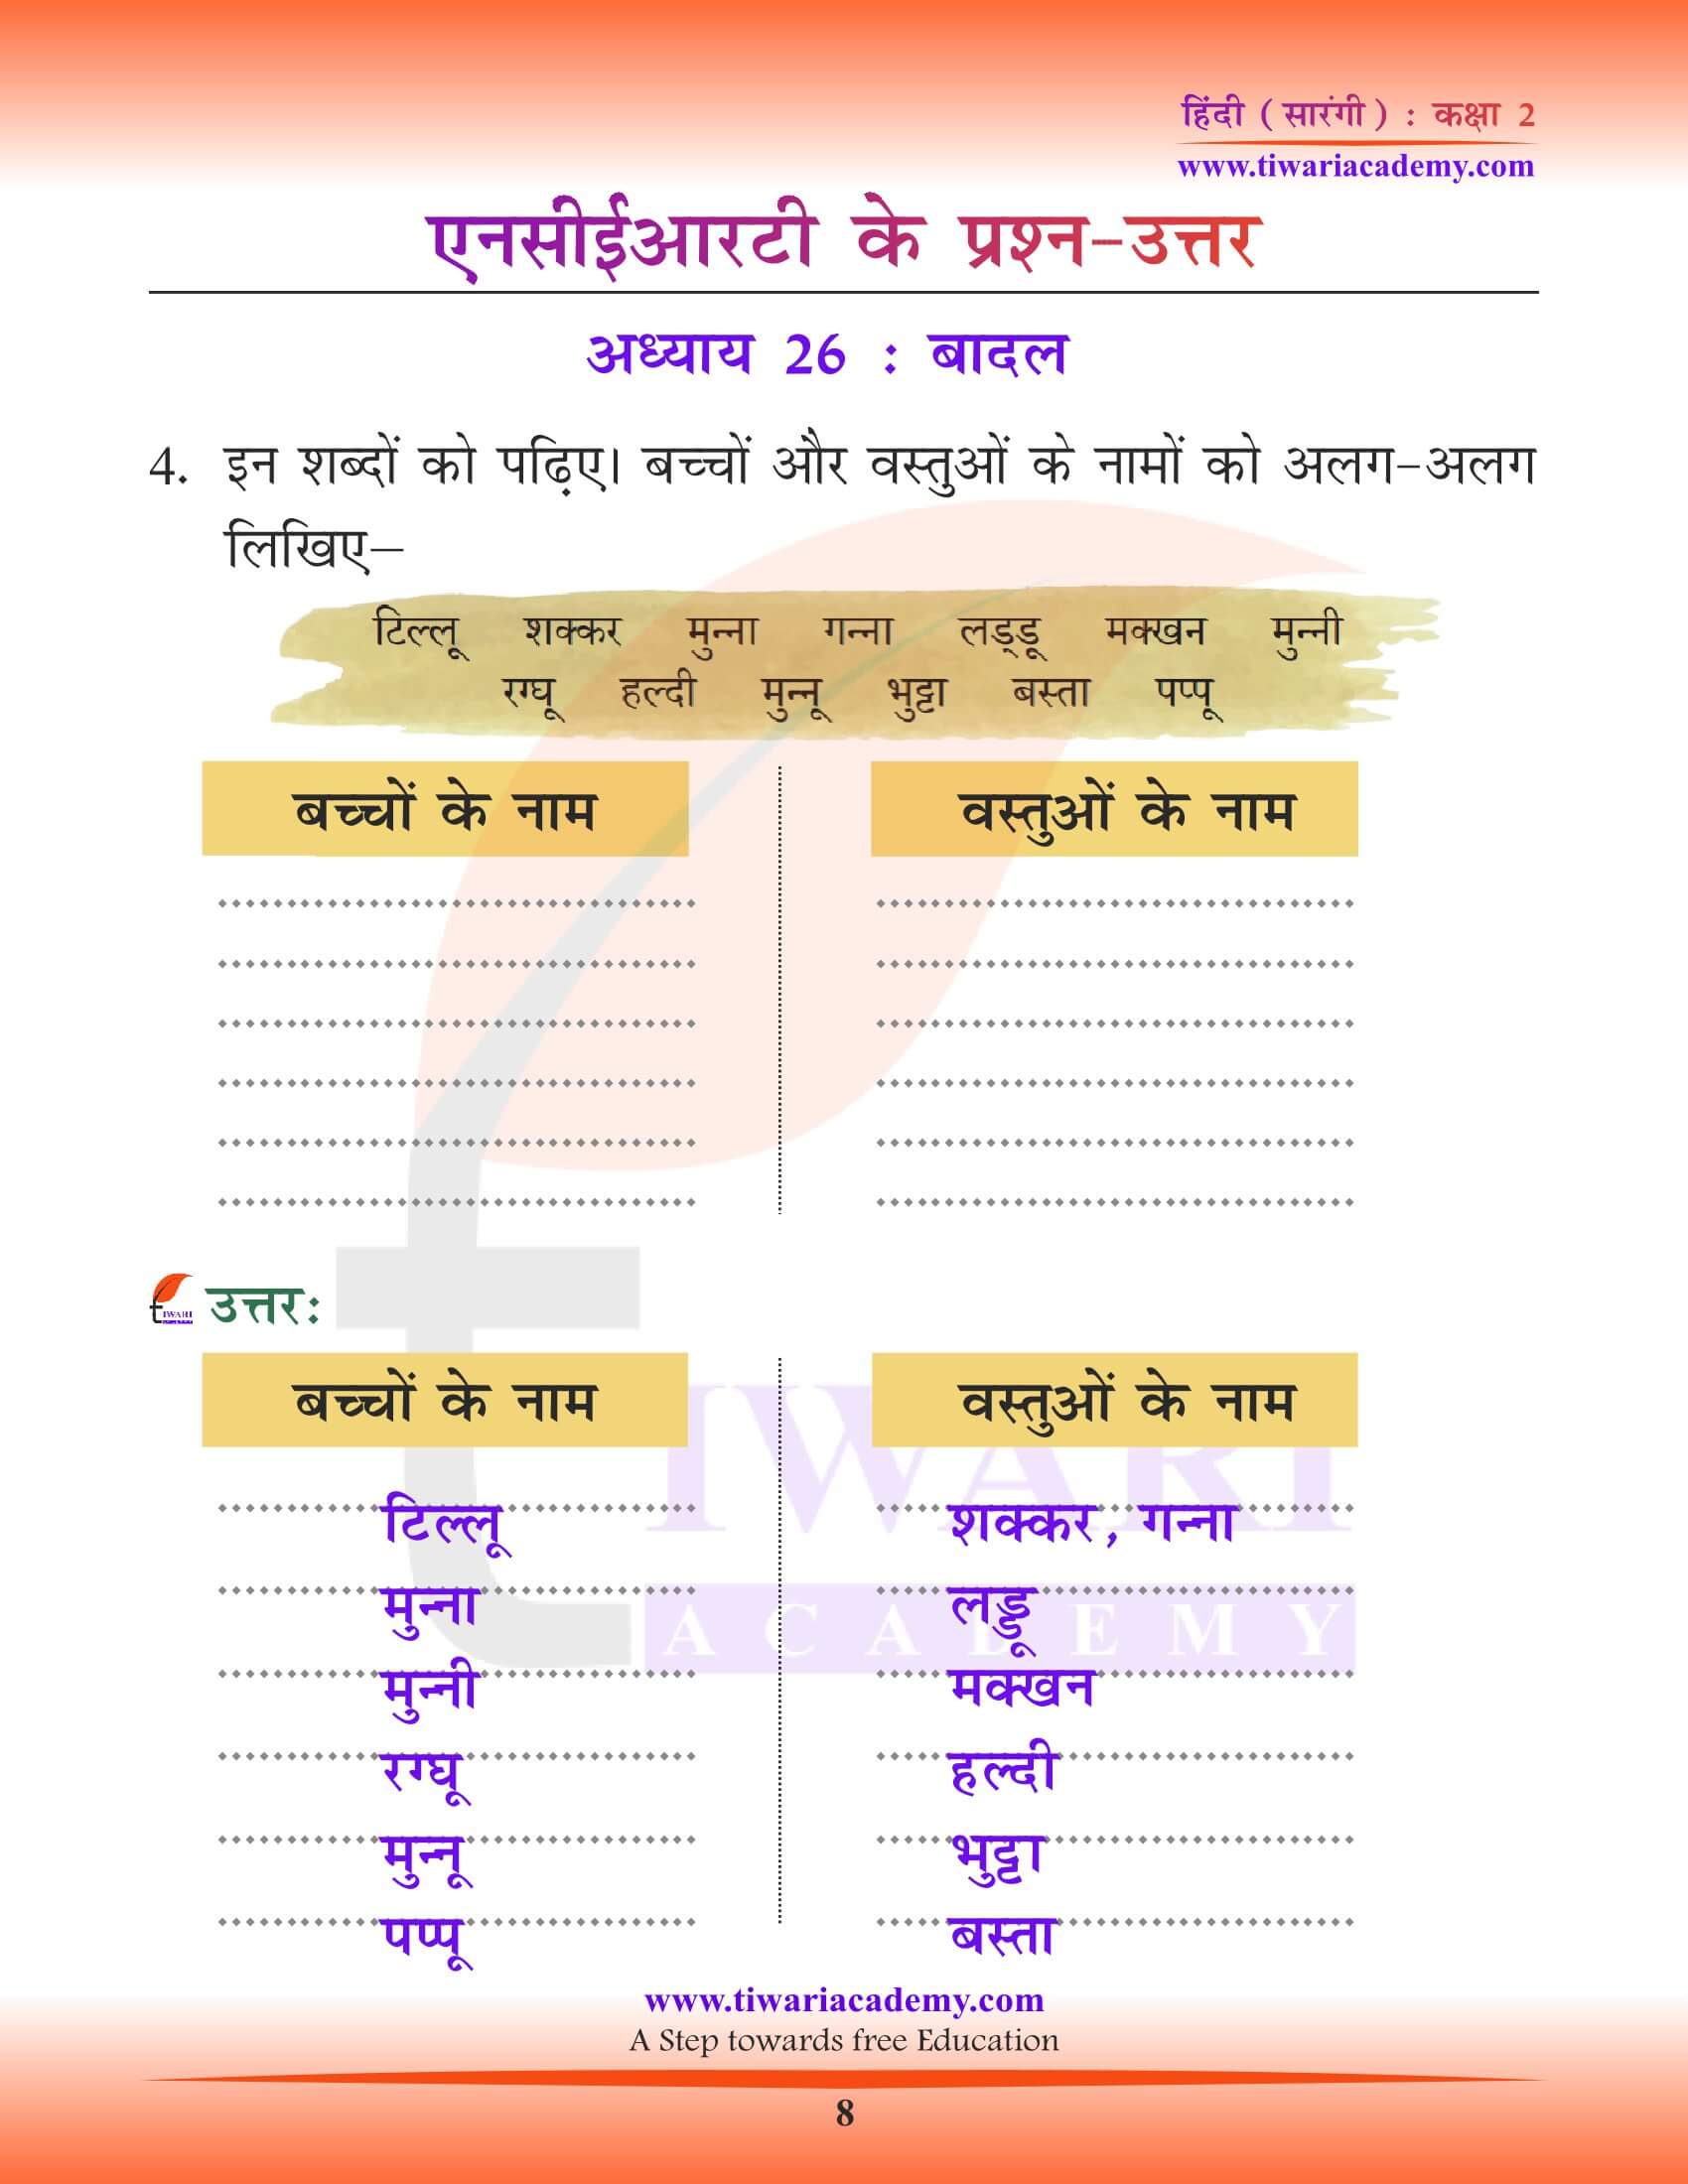 कक्षा 2 हिंदी सारंगी अध्याय 26 सभी प्रश्नों के उत्तर